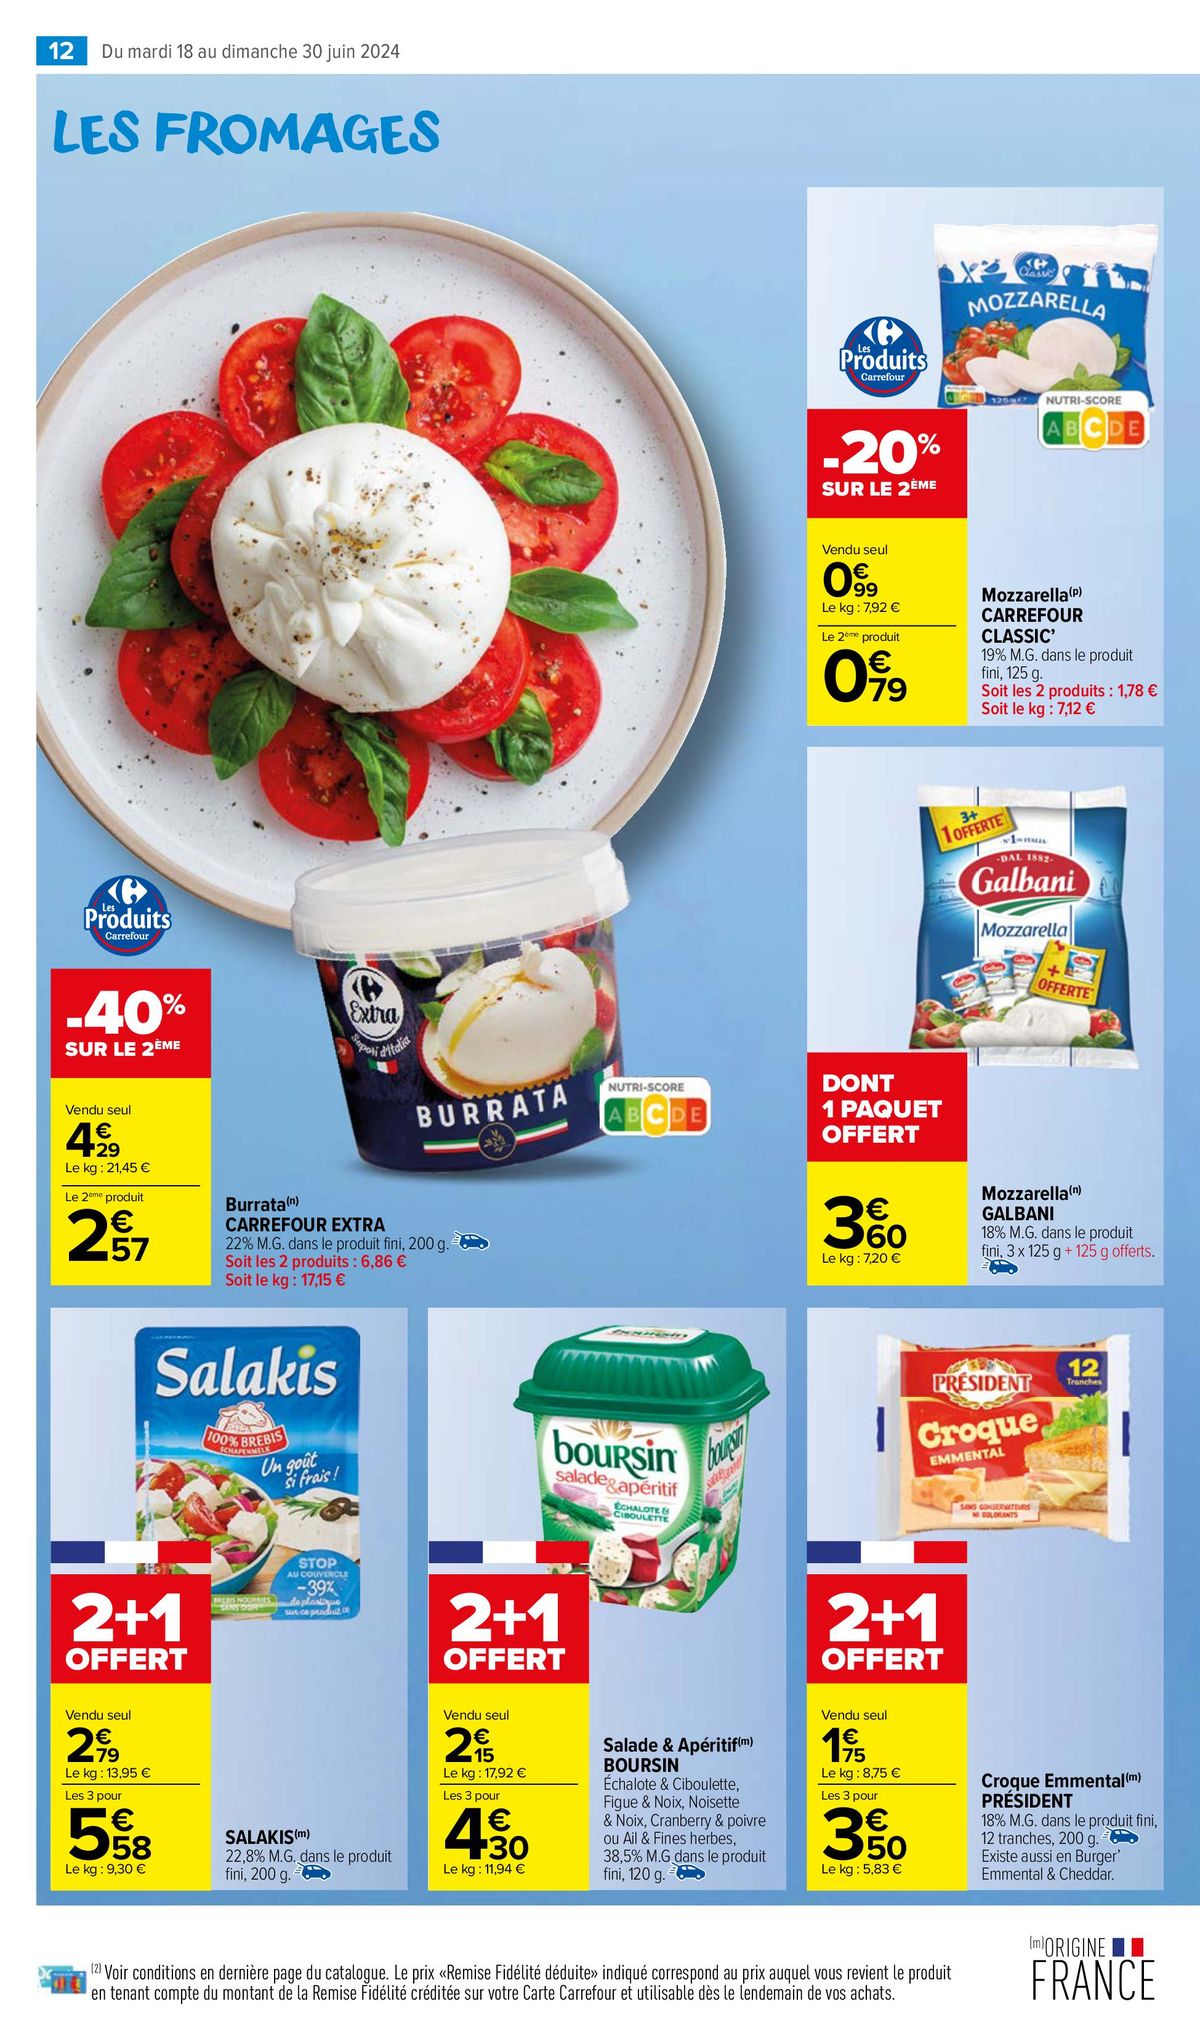 Catalogue Un miam pour les produits laitiers, page 00014